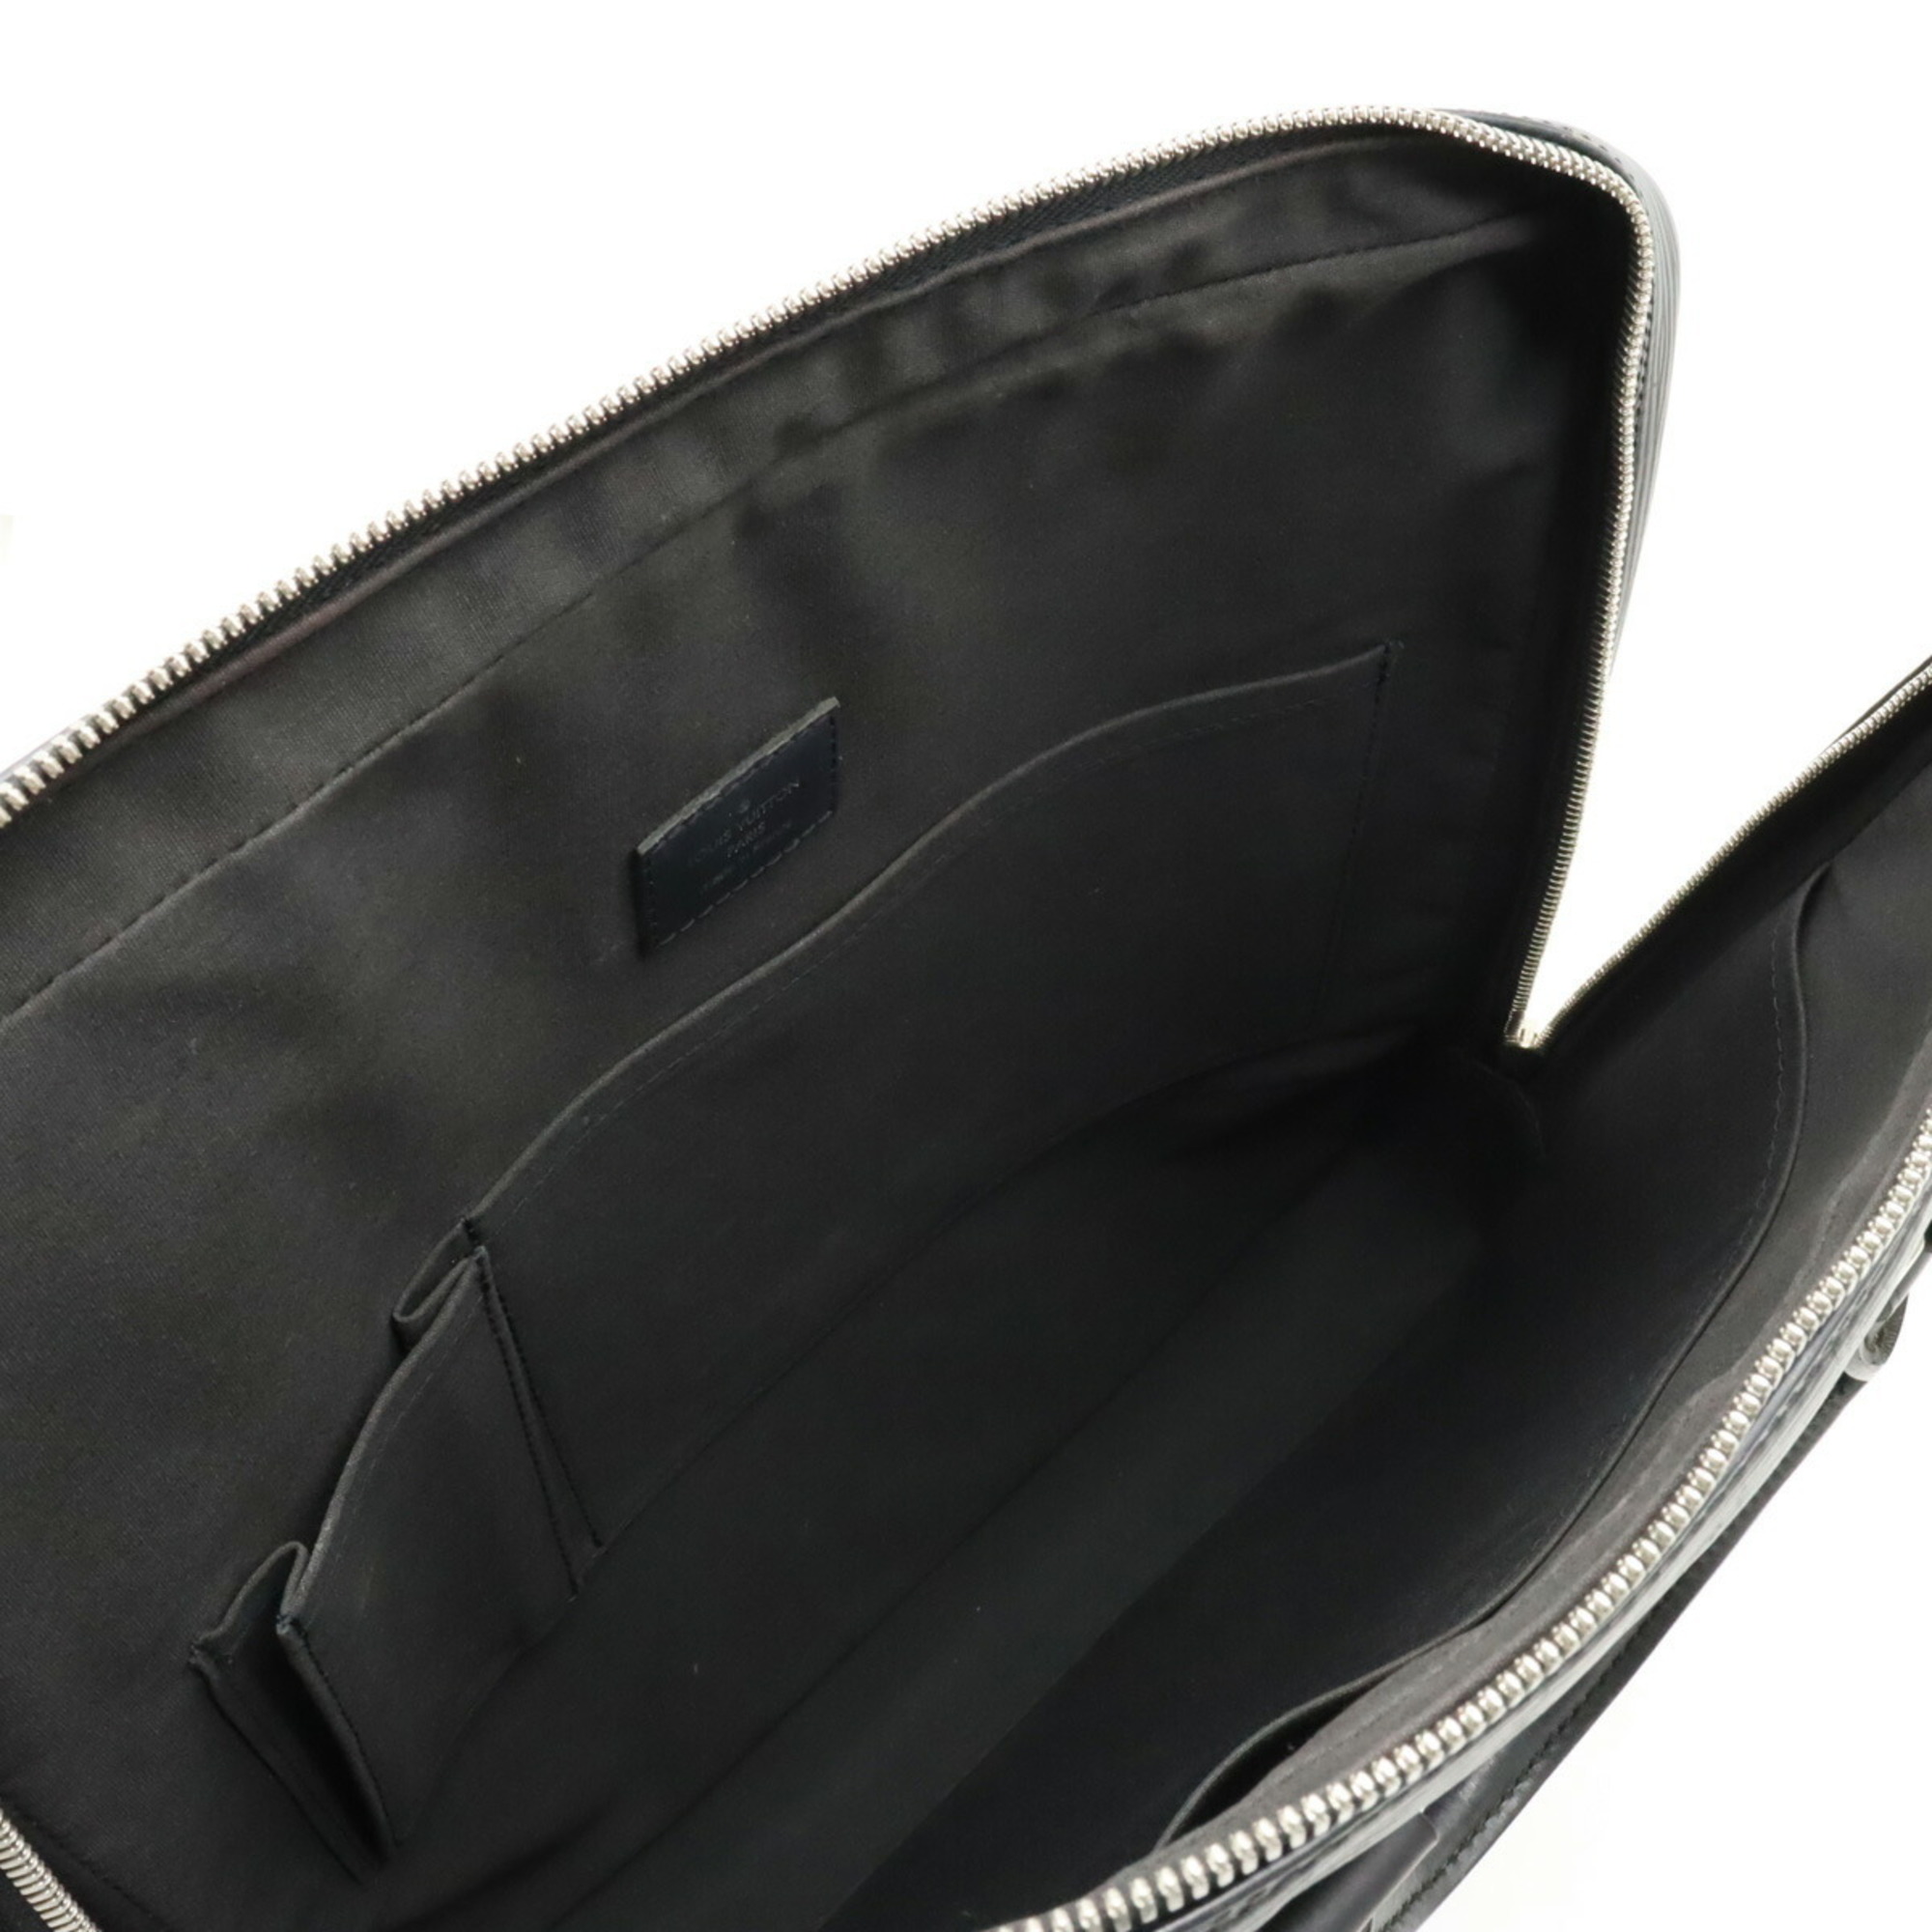 LOUIS VUITTON Louis Vuitton Epi Vivienne MM Handbag Tote Bag Leather Noir Black M59122